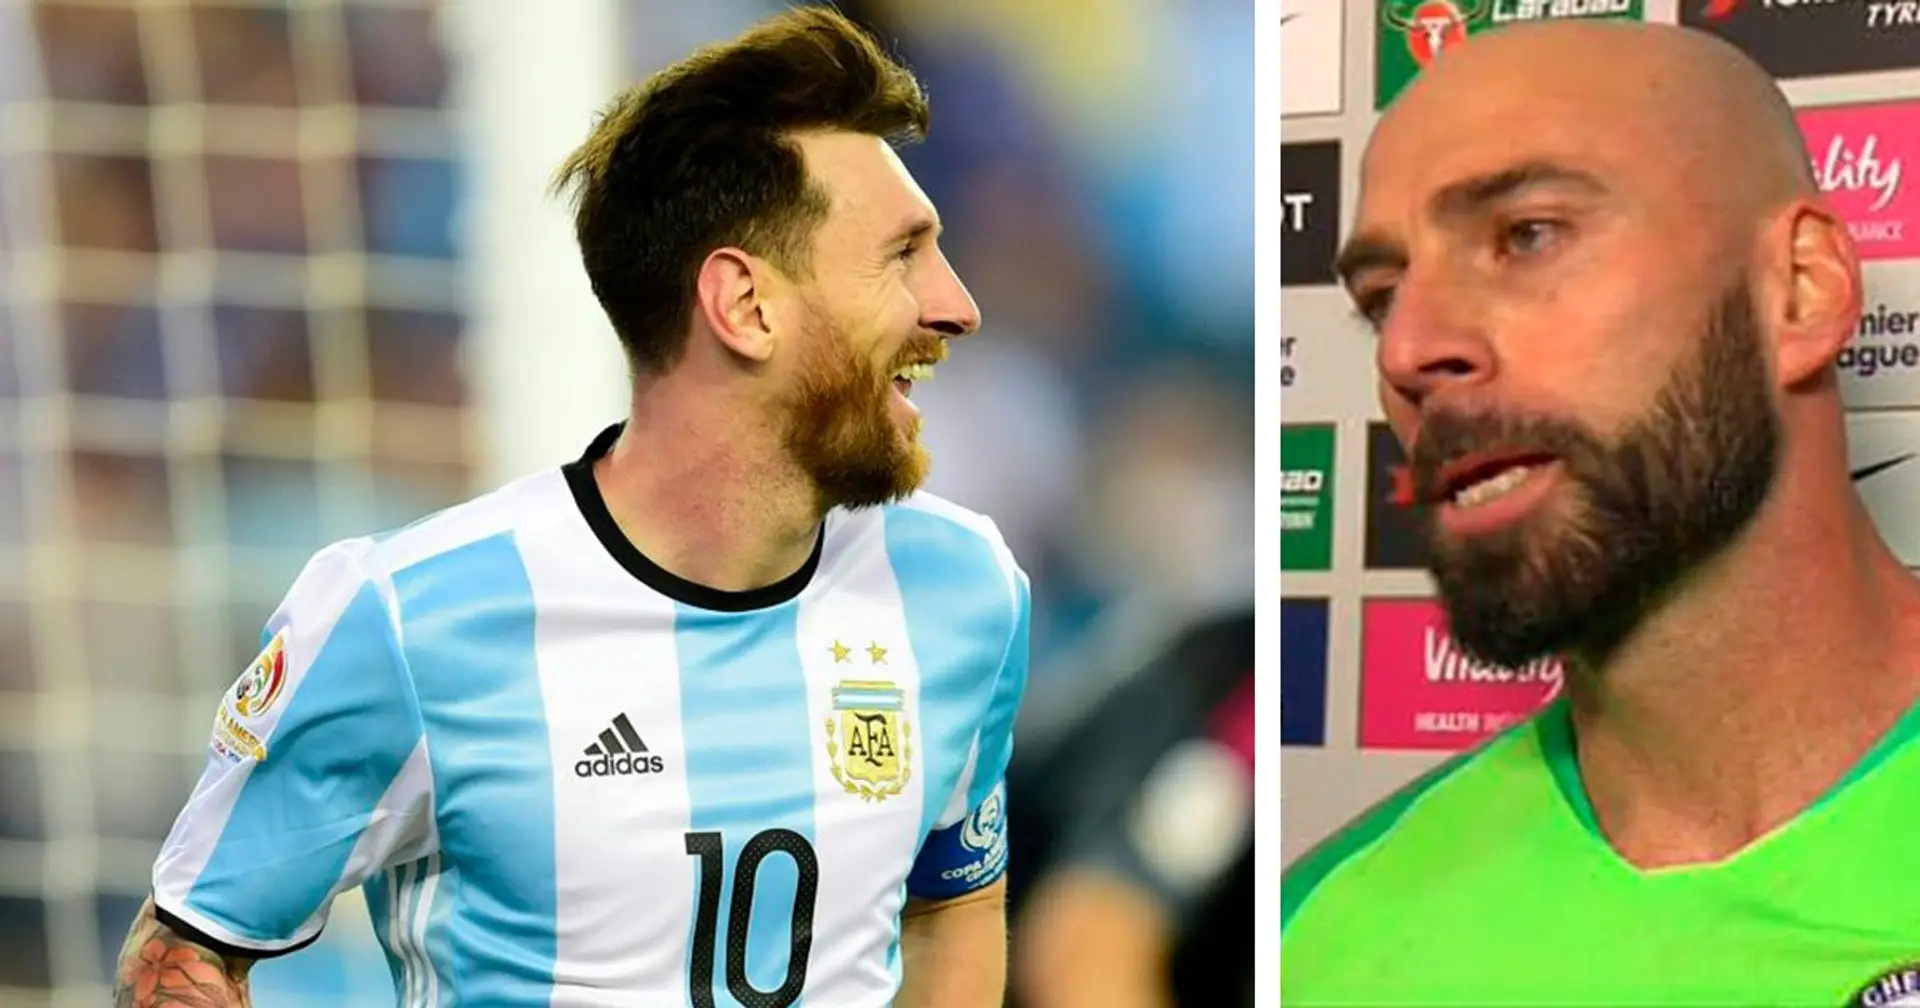 "Messi sort pour assassiner les gardiens de but. Il se fiche que vous soyez son ami": Willy Caballero